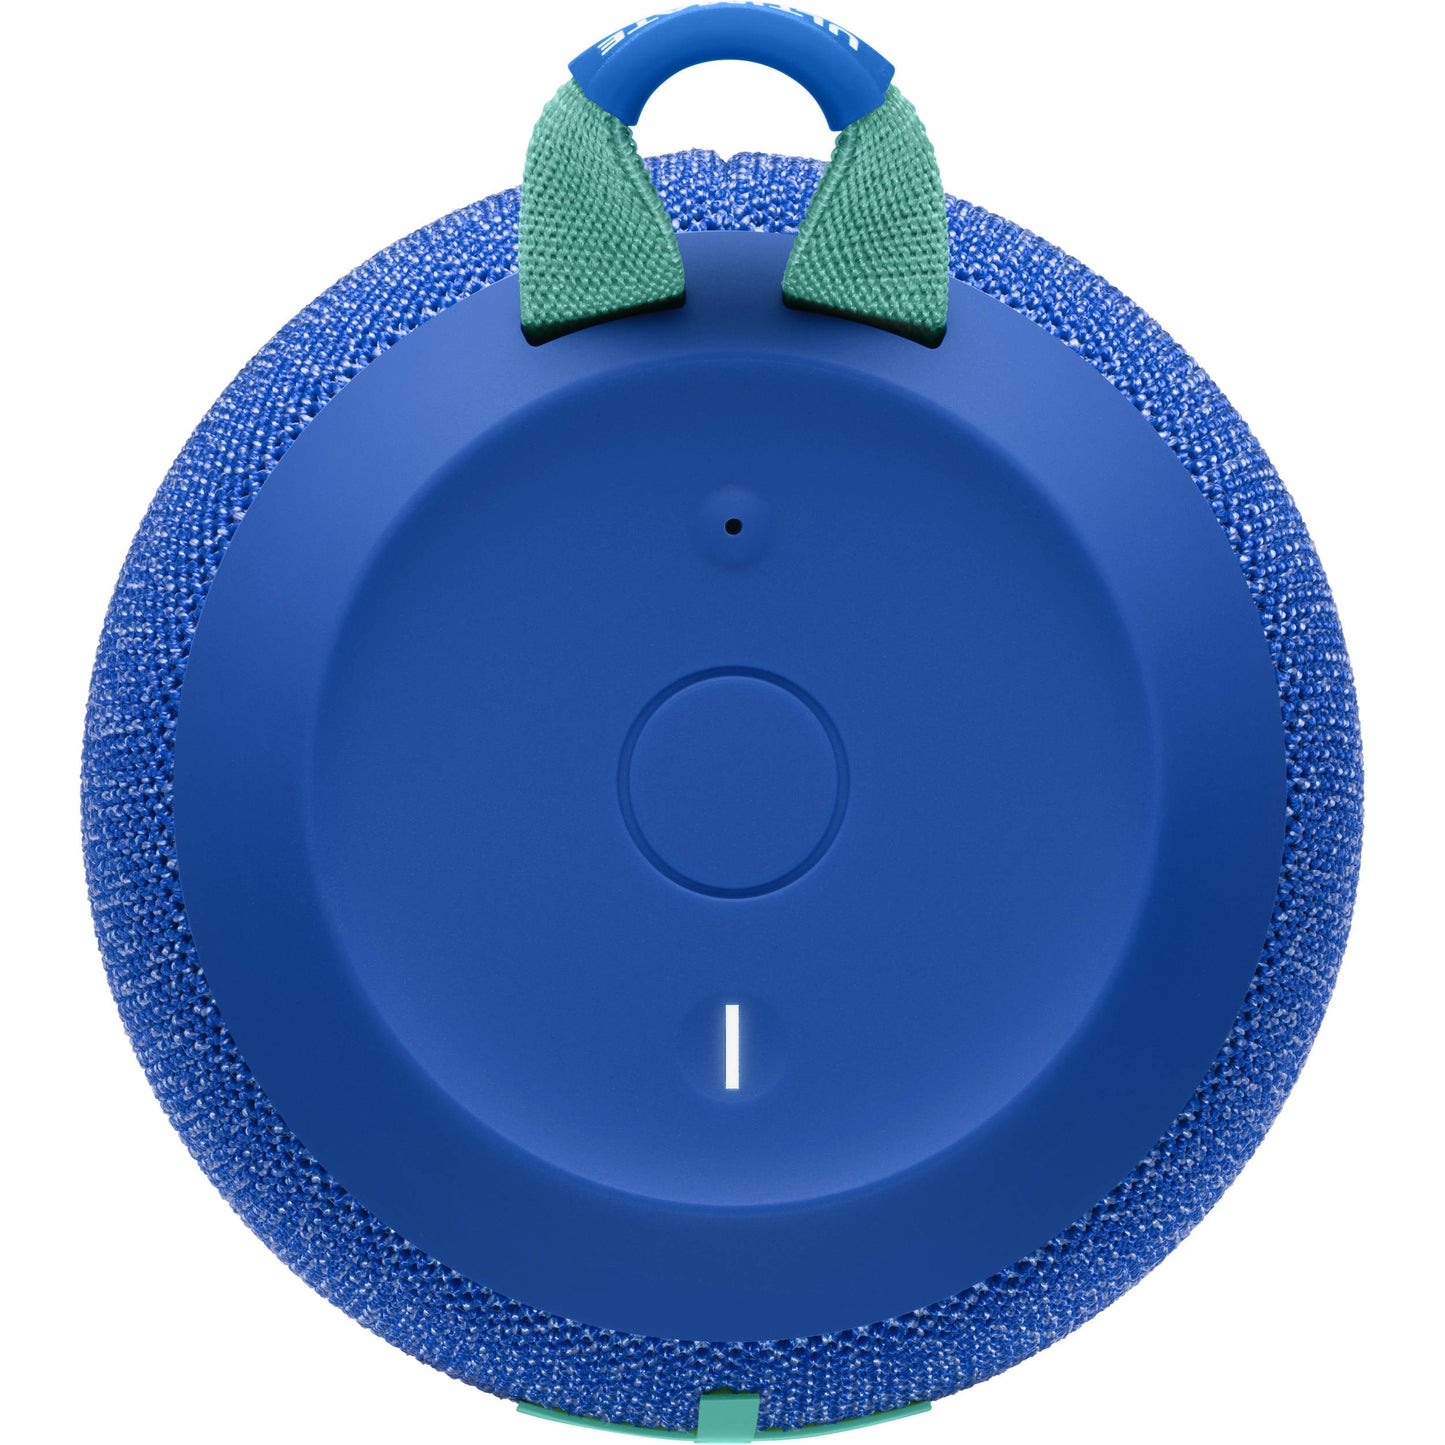 Logitech Ultimate Ears Wonderboom 2 Bluetooth Speaker IP67 Waterproof Dustproof with 13h Playtime 30m Range Wireless Pairing